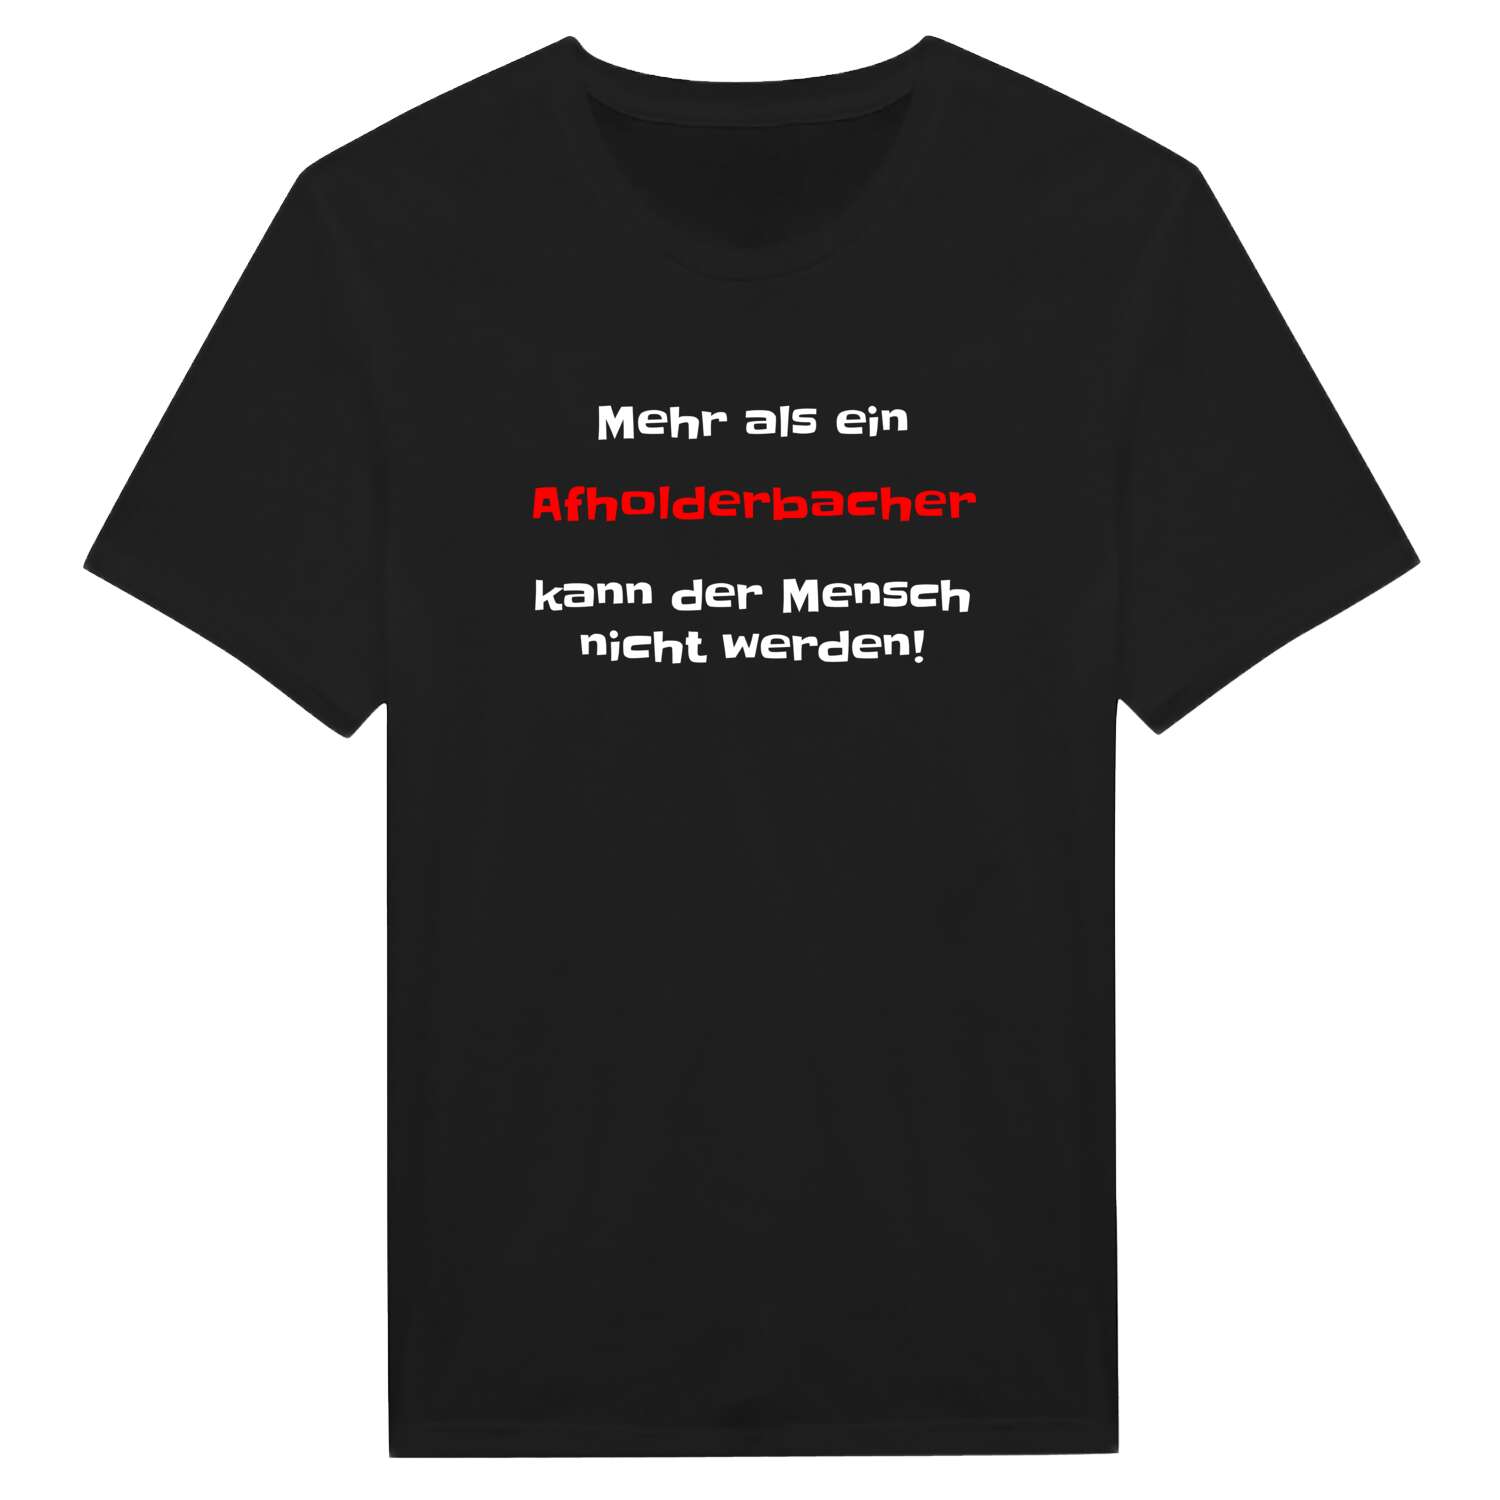 Afholderbach T-Shirt »Mehr als ein«